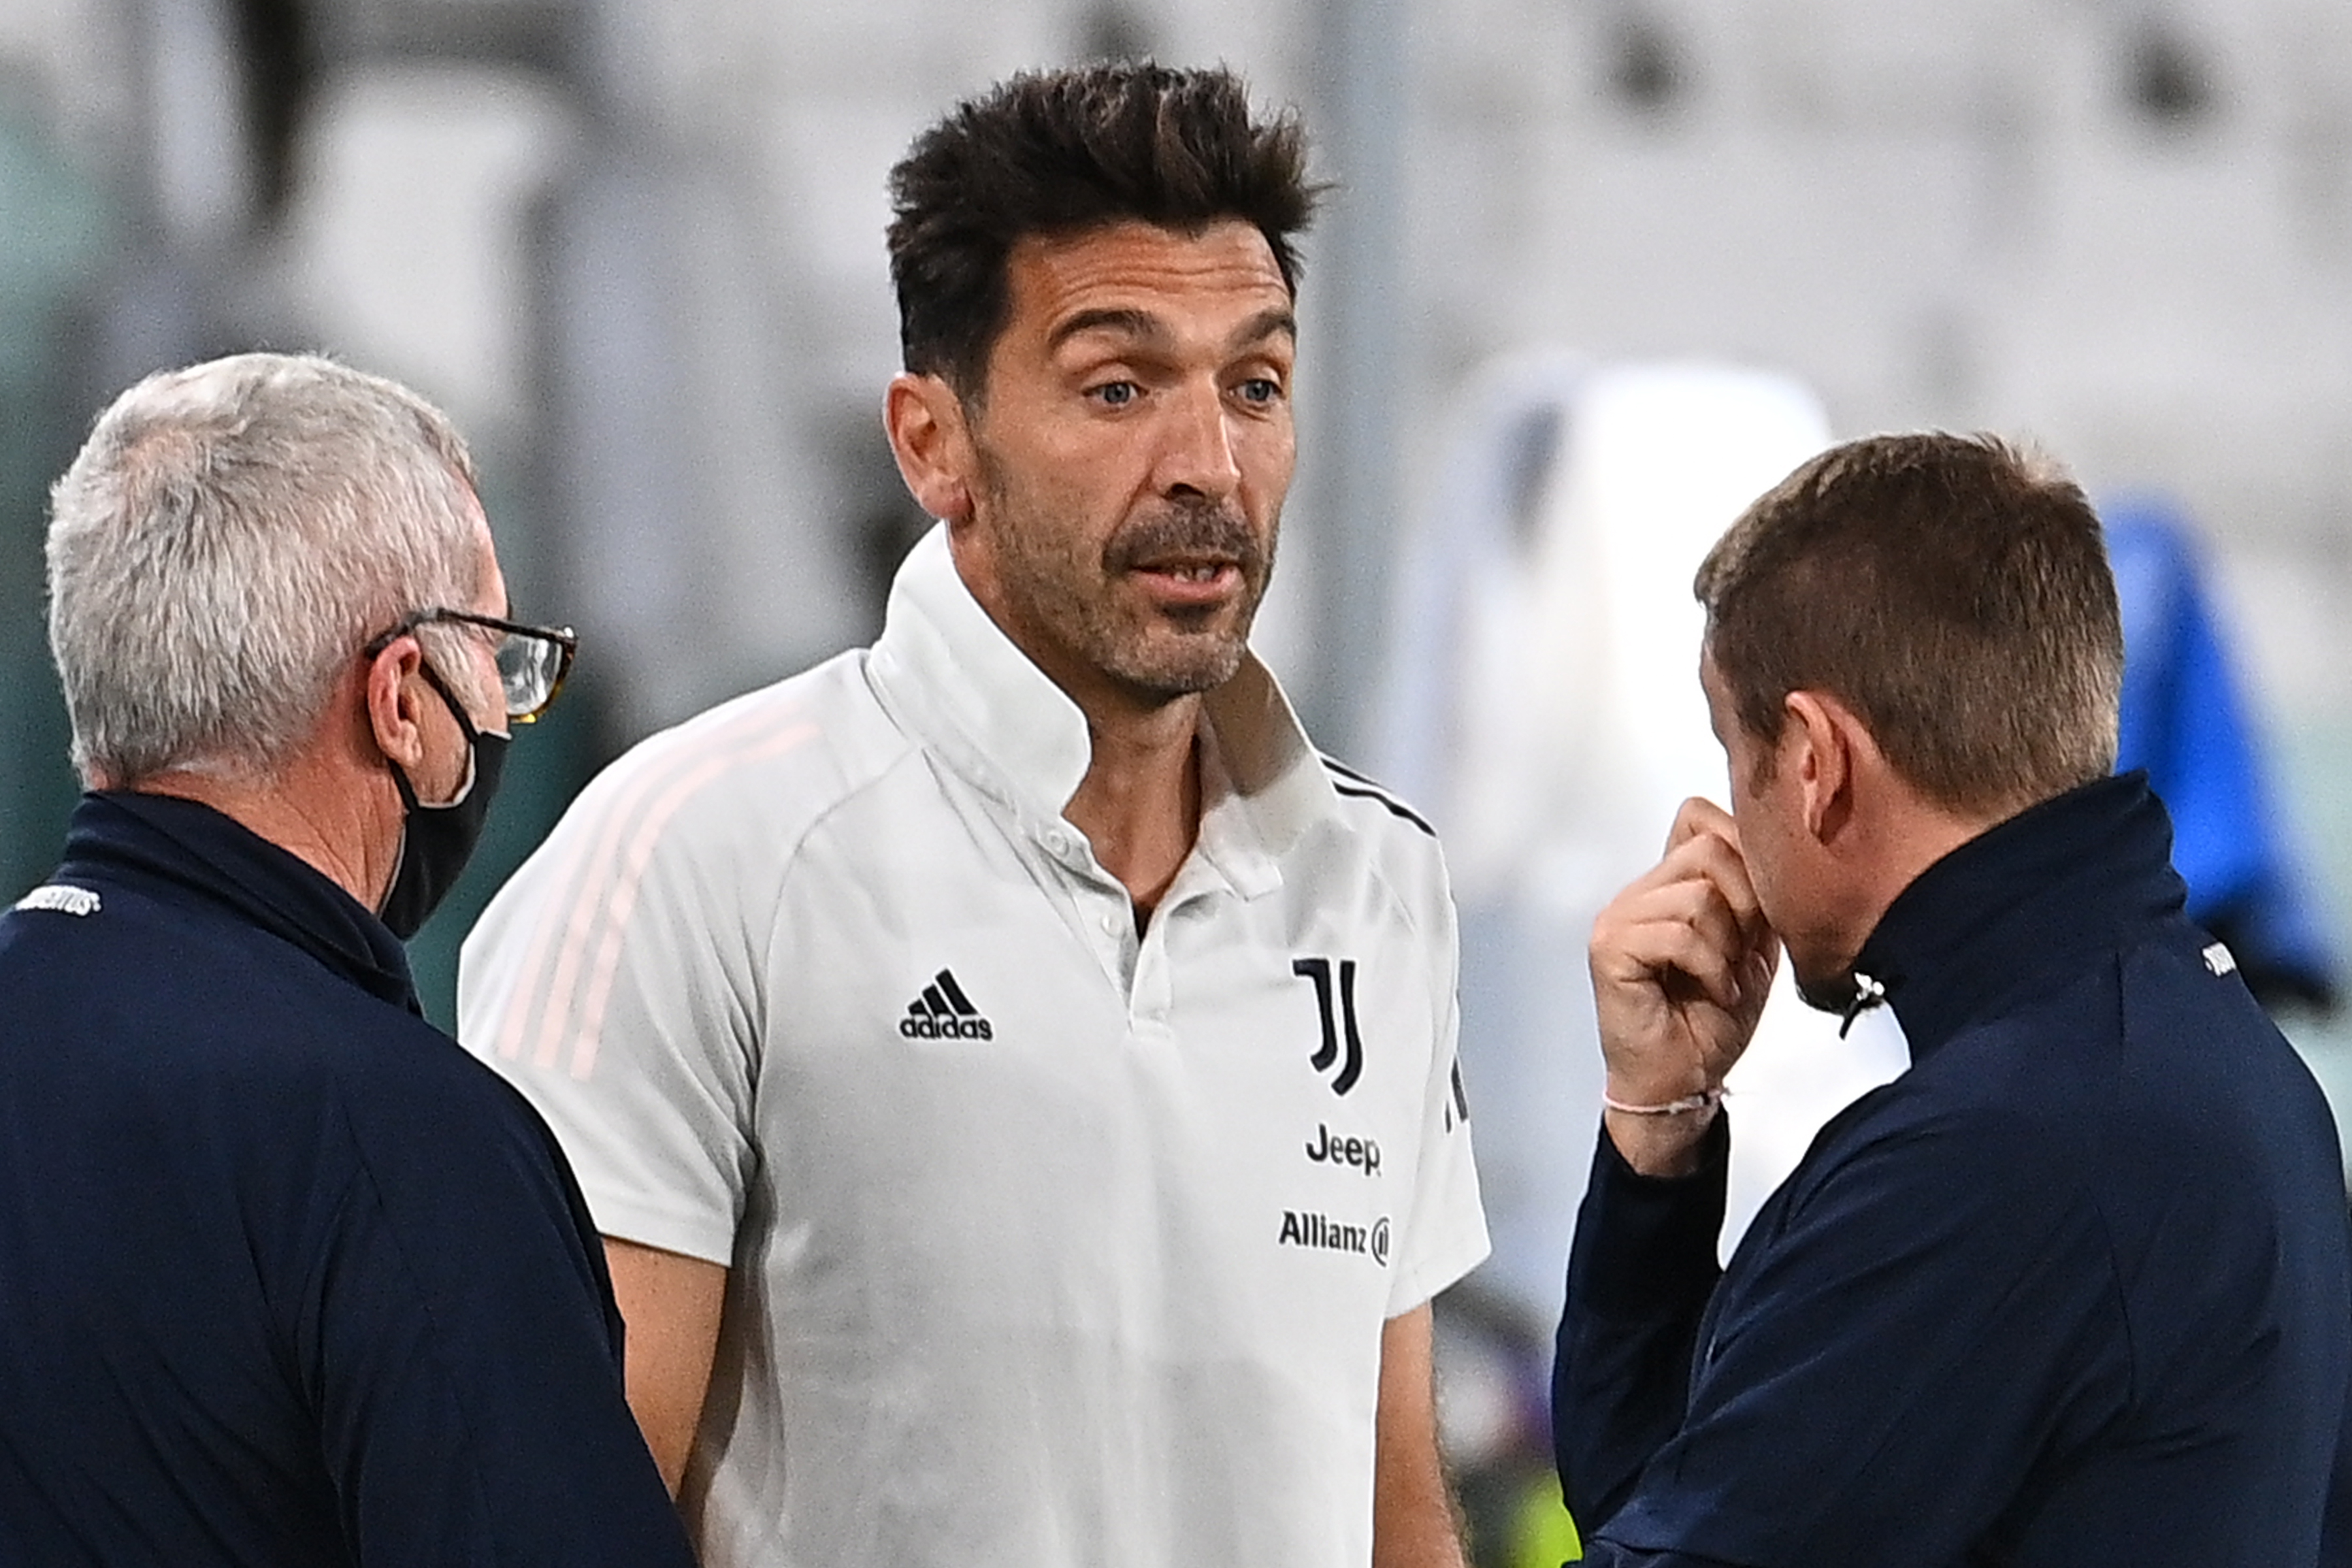 Napoli komt niet opdagen in uitwedstrijd tegen Juventus